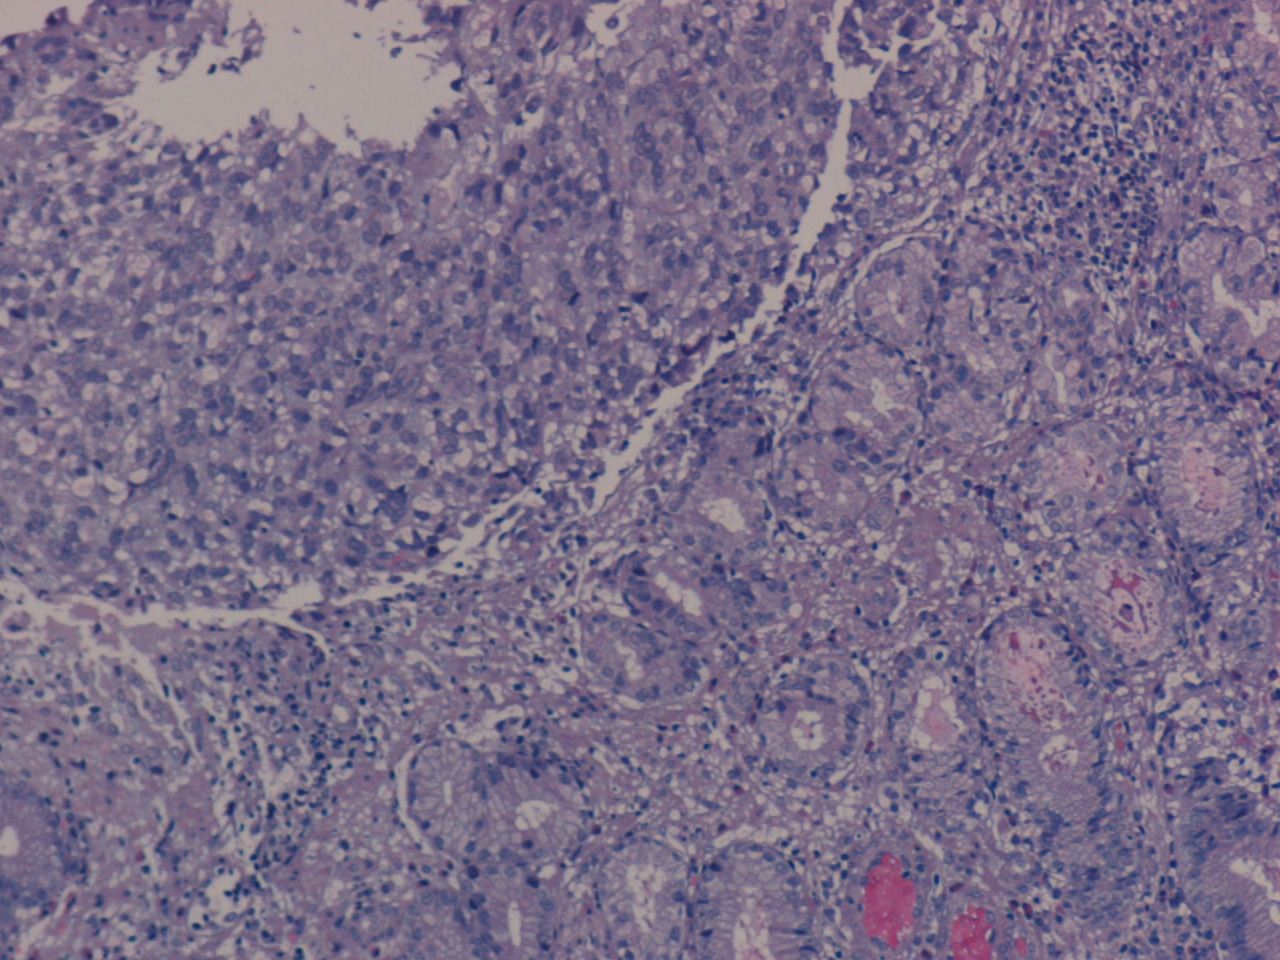 Imagen de Tumor submucoso gstrico / Gastric submucosal tumor.